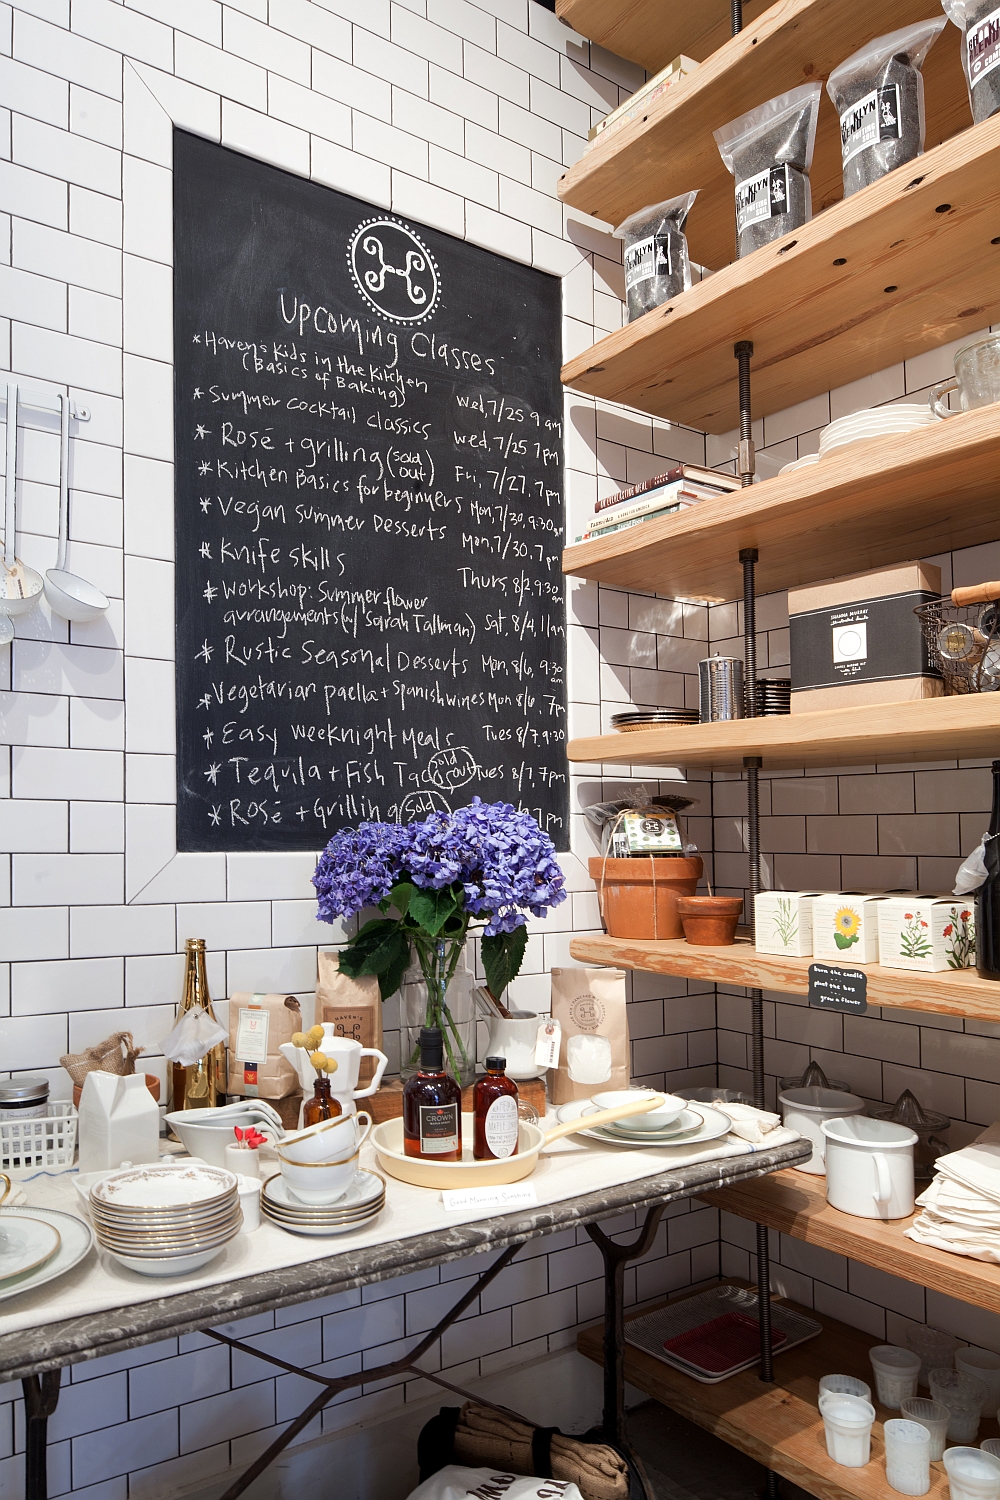 Магазин в интерьере кафе: меню Haven's Kitchn на меловой доске